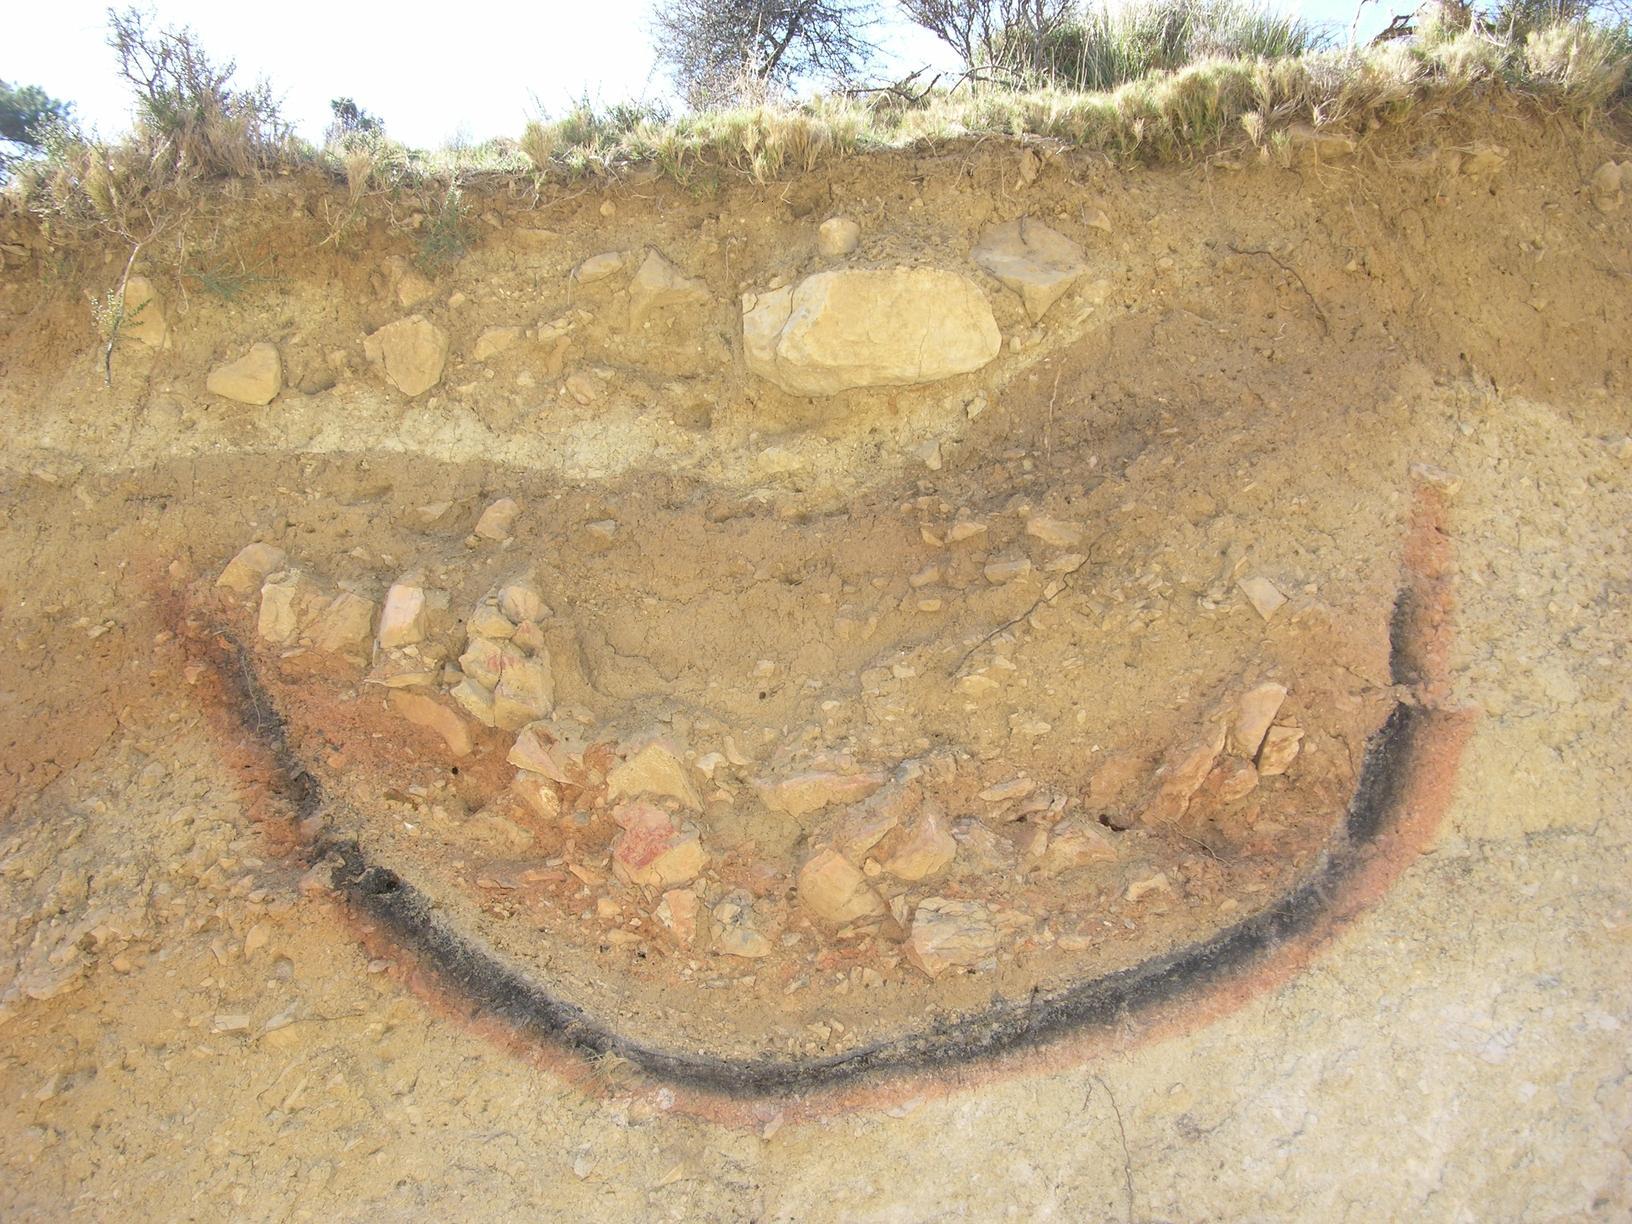       suelos-y-arqueologia-posibles-restos-de-cremaciones-iberas 2  Fuente Cecilio Oyonarte  